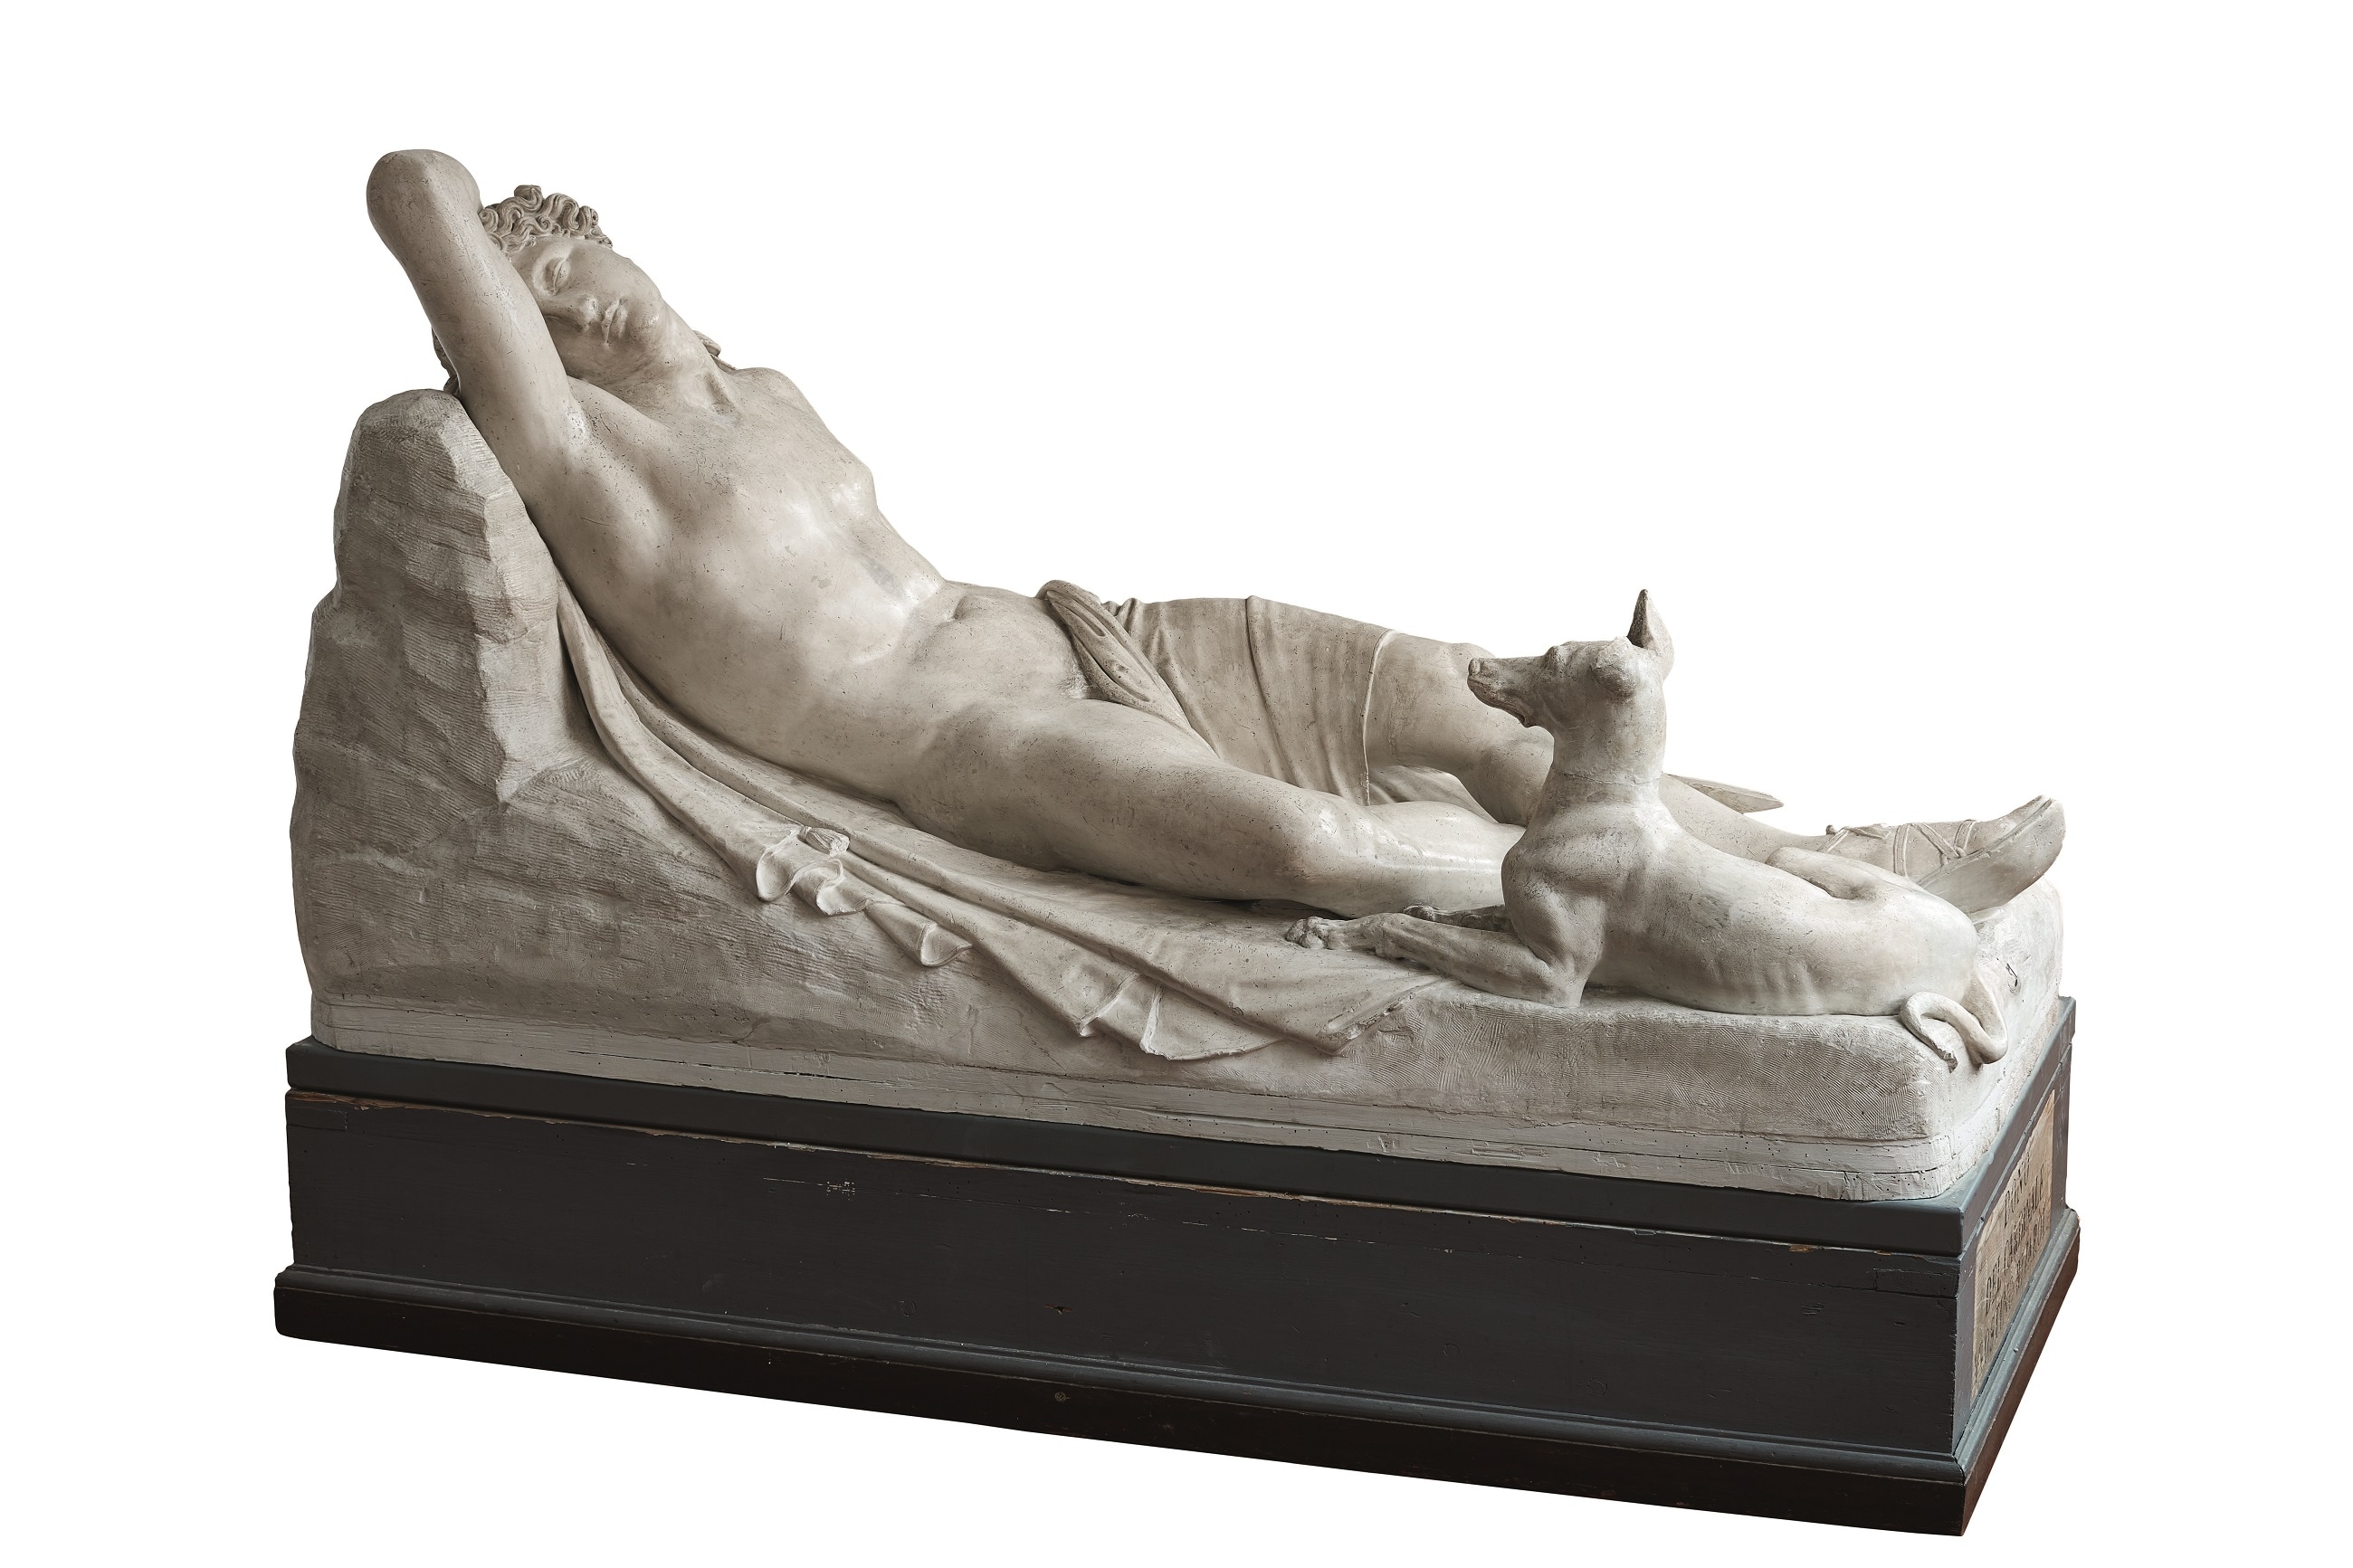 Antonio Canova (1757 – 1822), Endimione dormiente, 1819-1822, Gesso, 99x190x92 cm., Ravenna, Accademia di Belle Arti